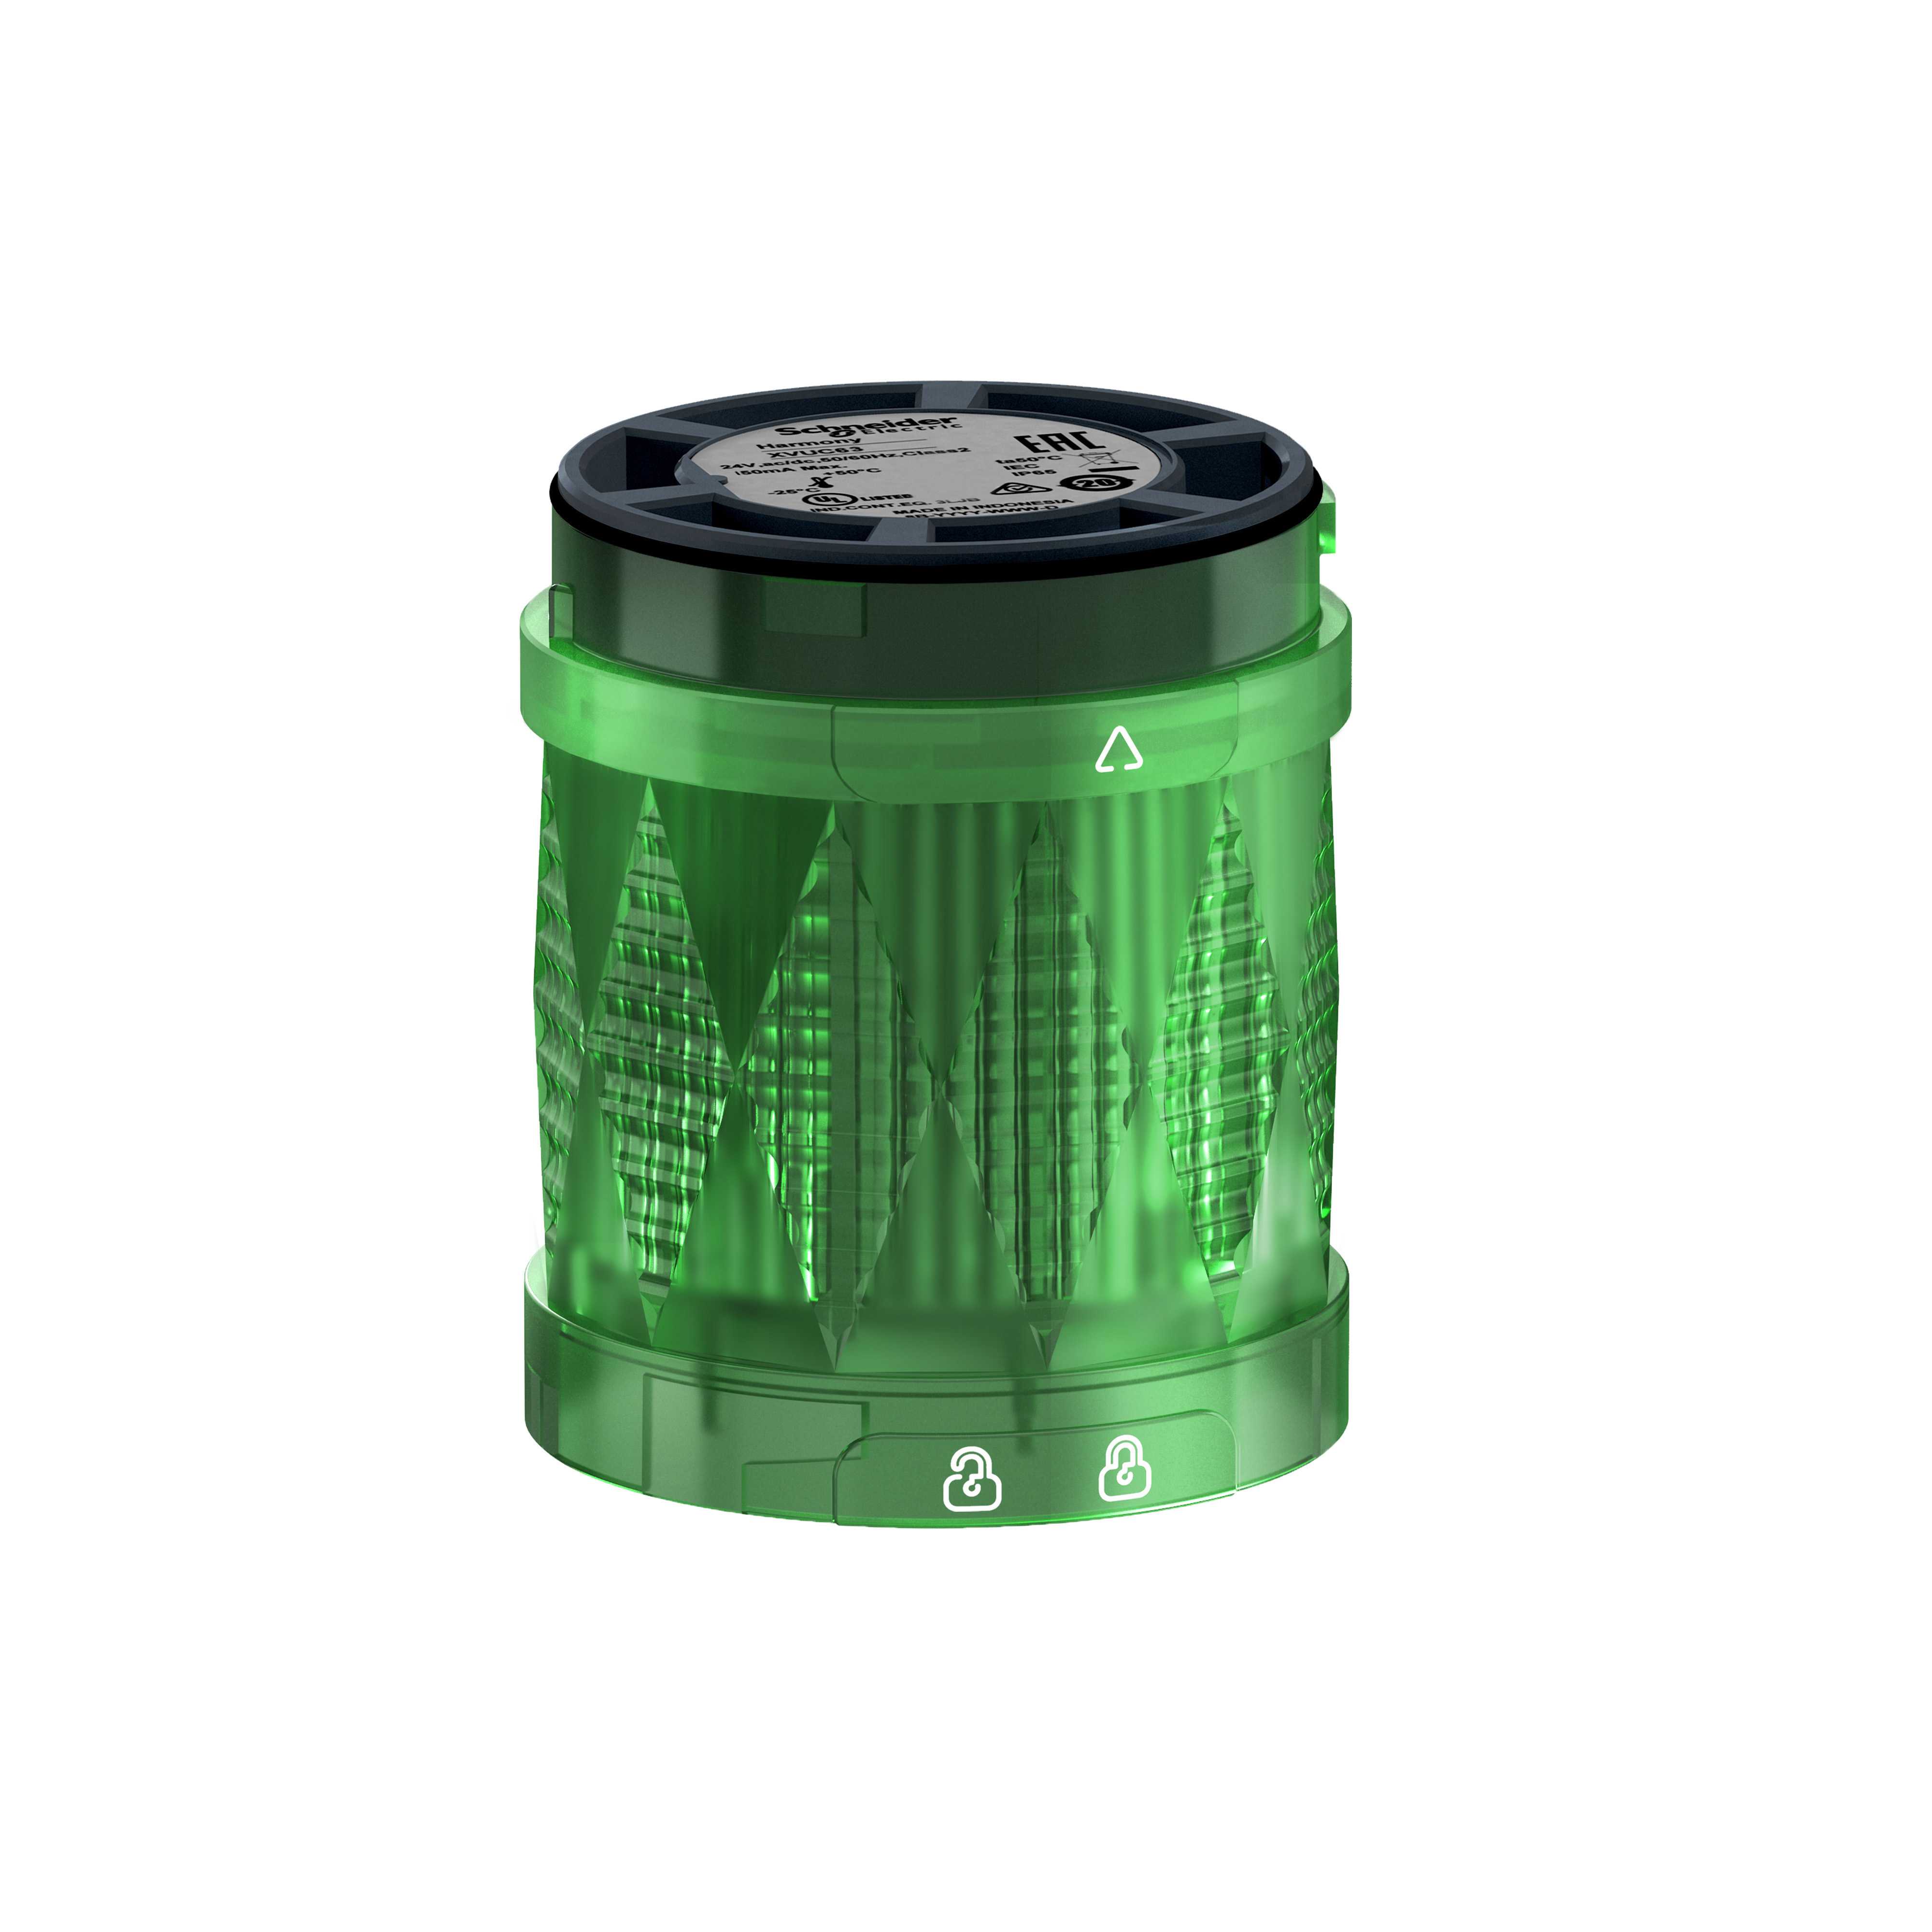 Telemecanique - Ø60 mm LED lysenhet for XVU lyskolonne i grønn farge med kraftig flash